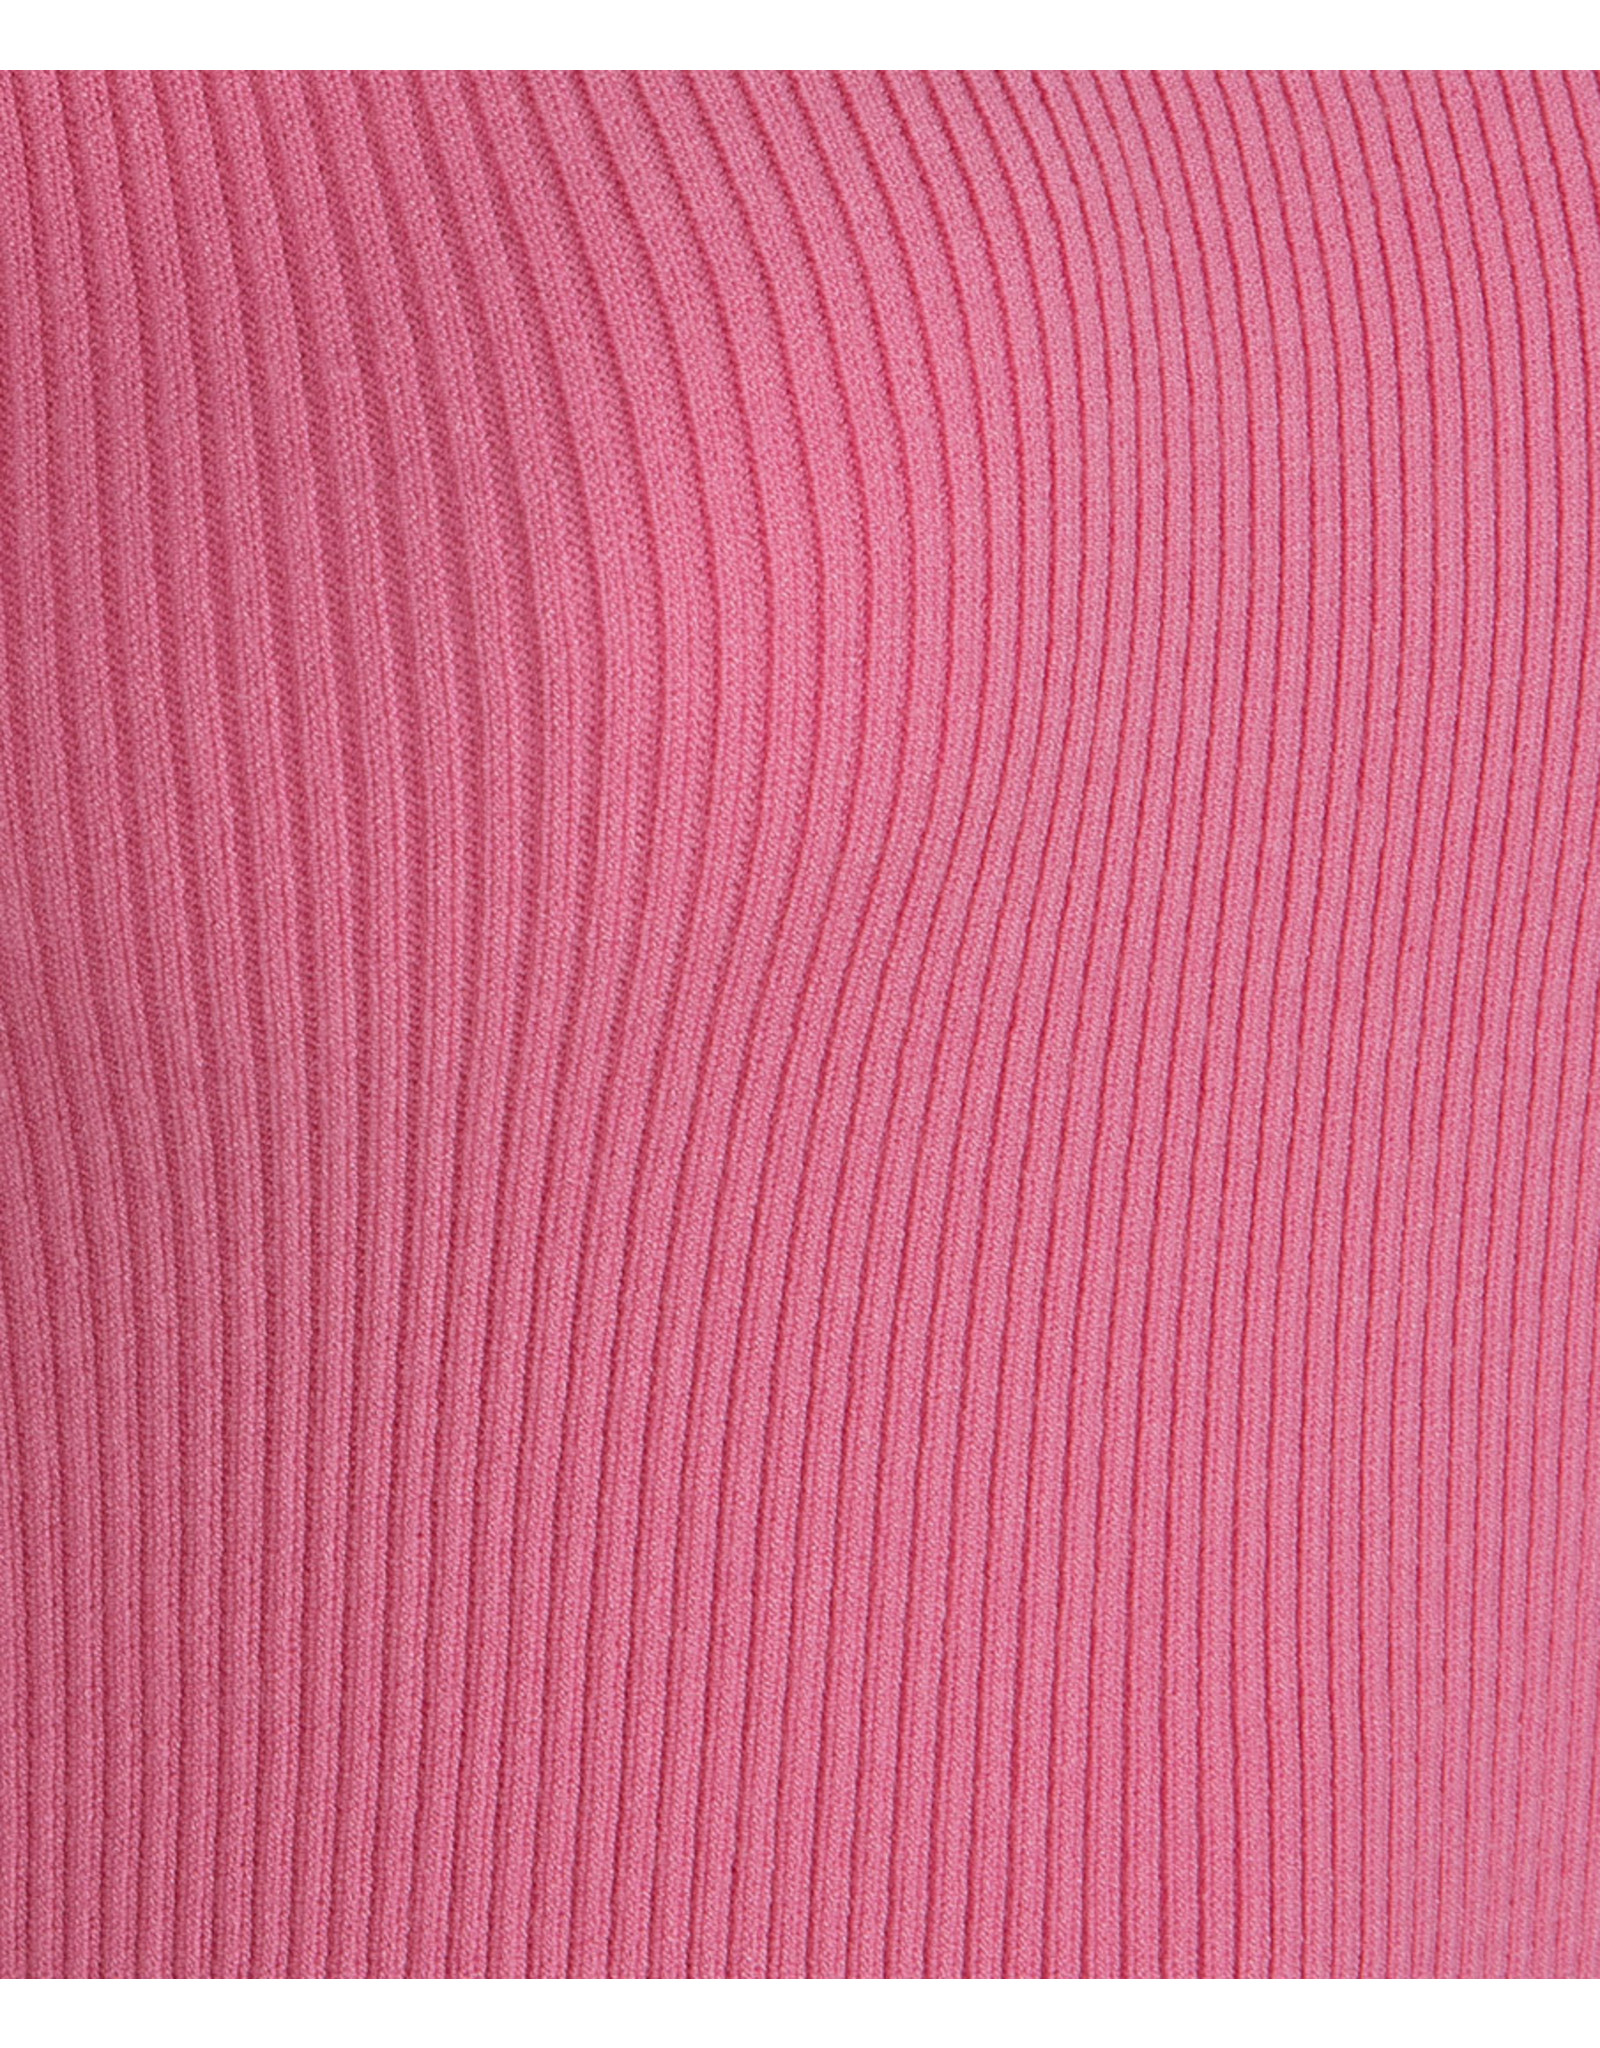 EsQualo EsQualo - Sweater CB open rib pink